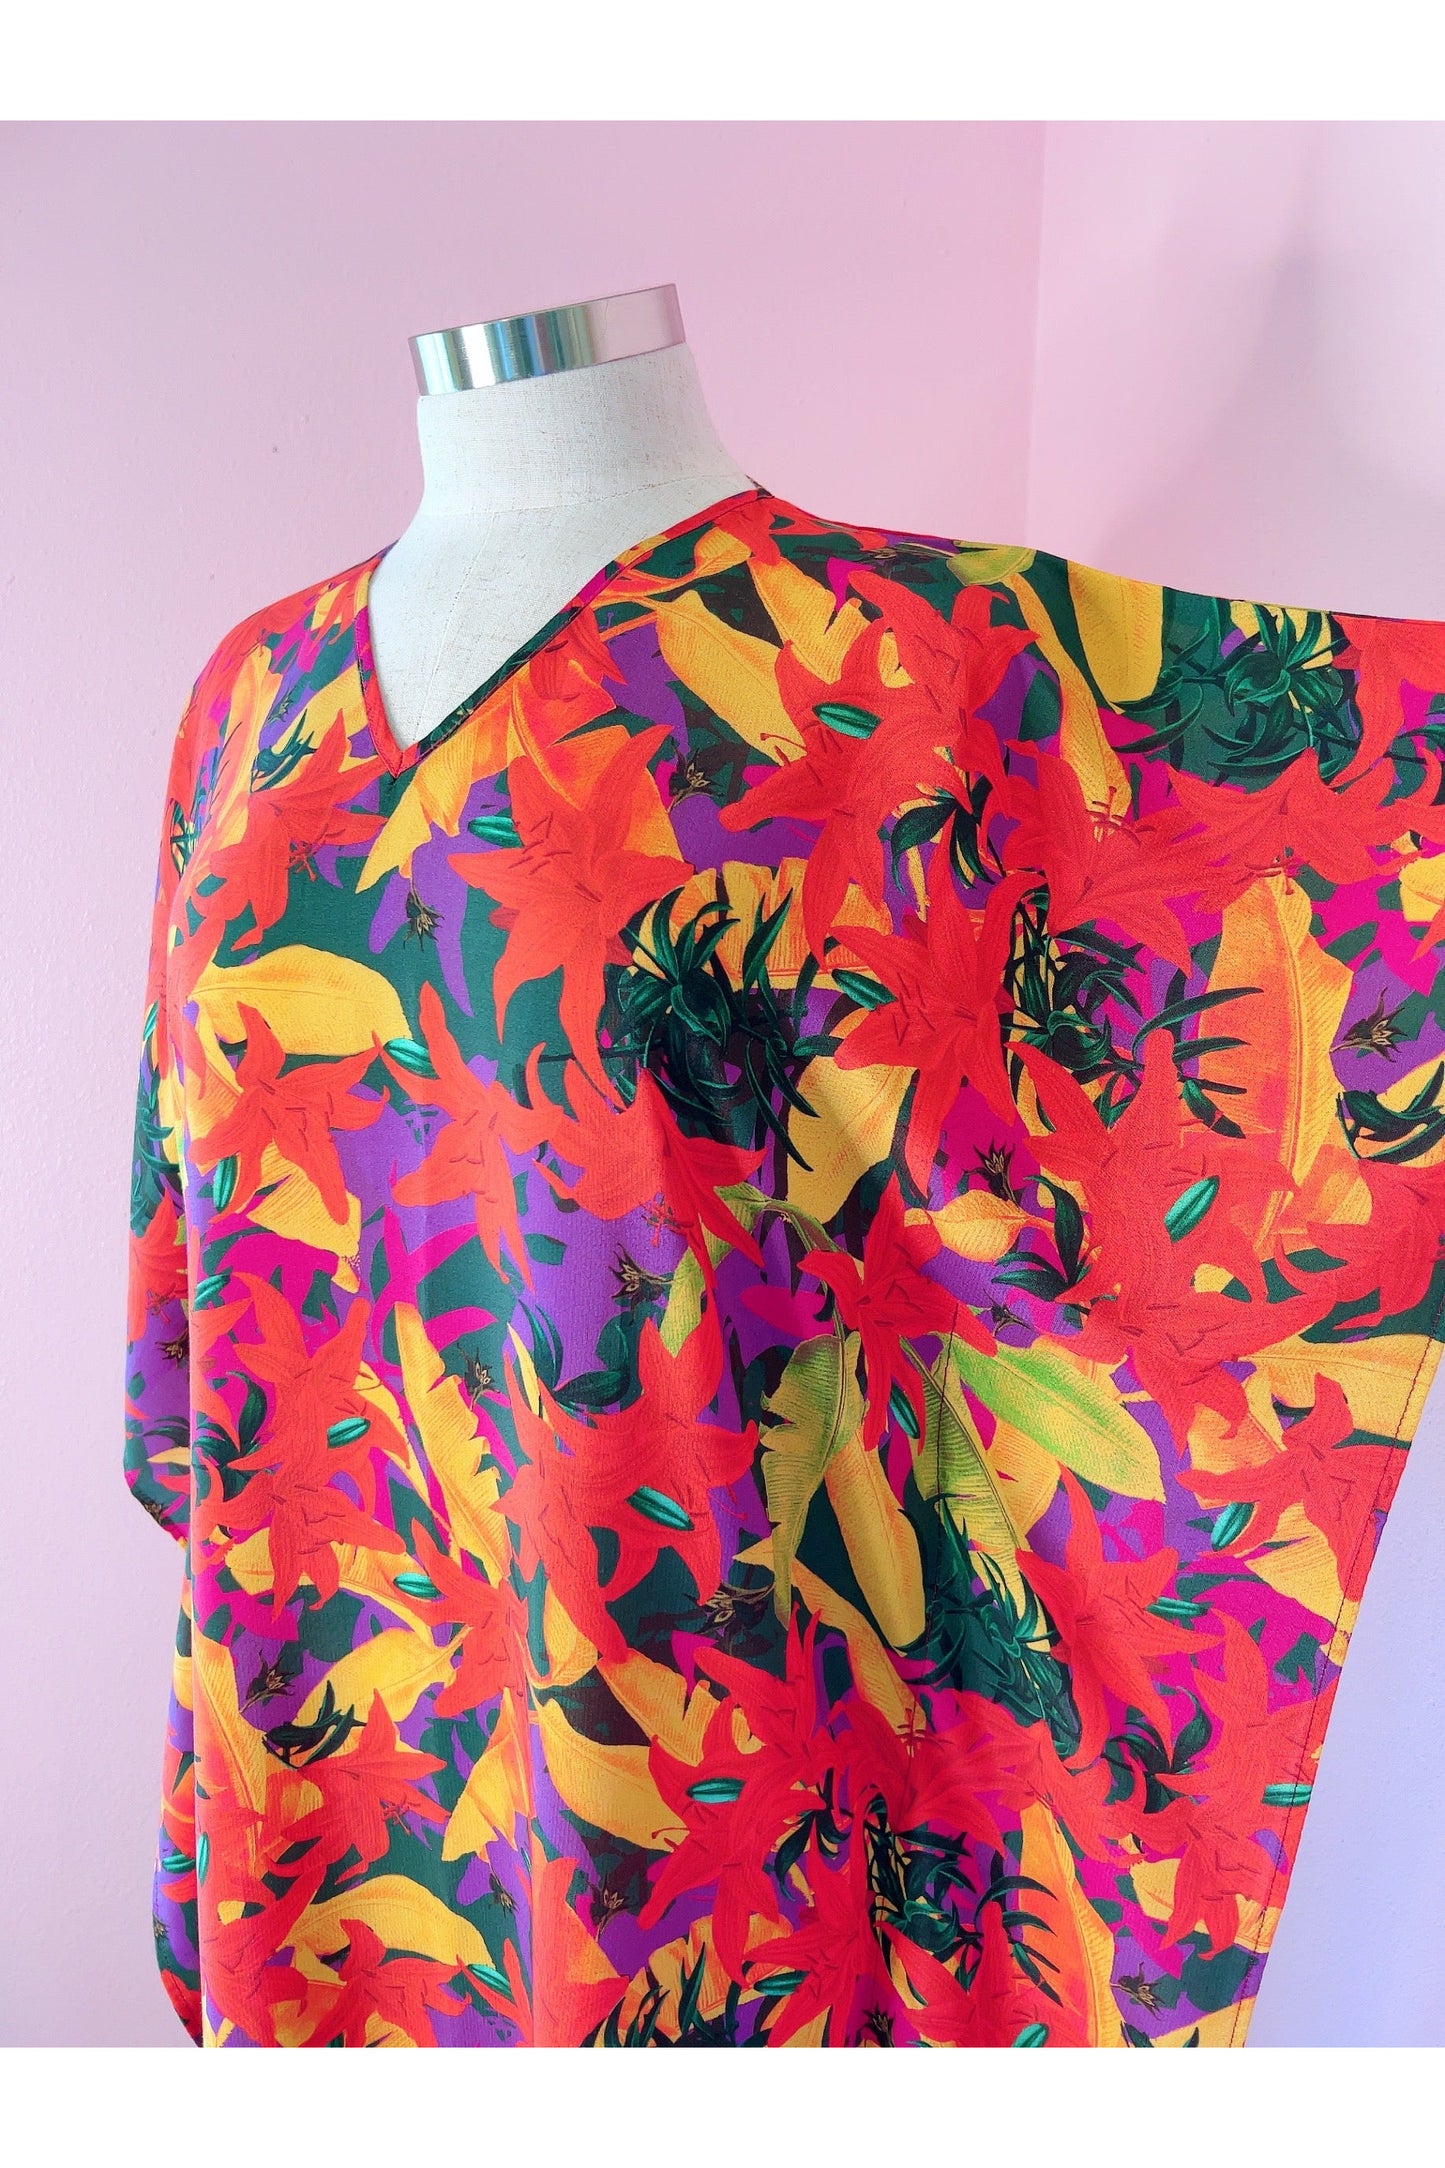 Hot Spice Tropics Floral Print Caftan Designed by Audrey K DuBiel